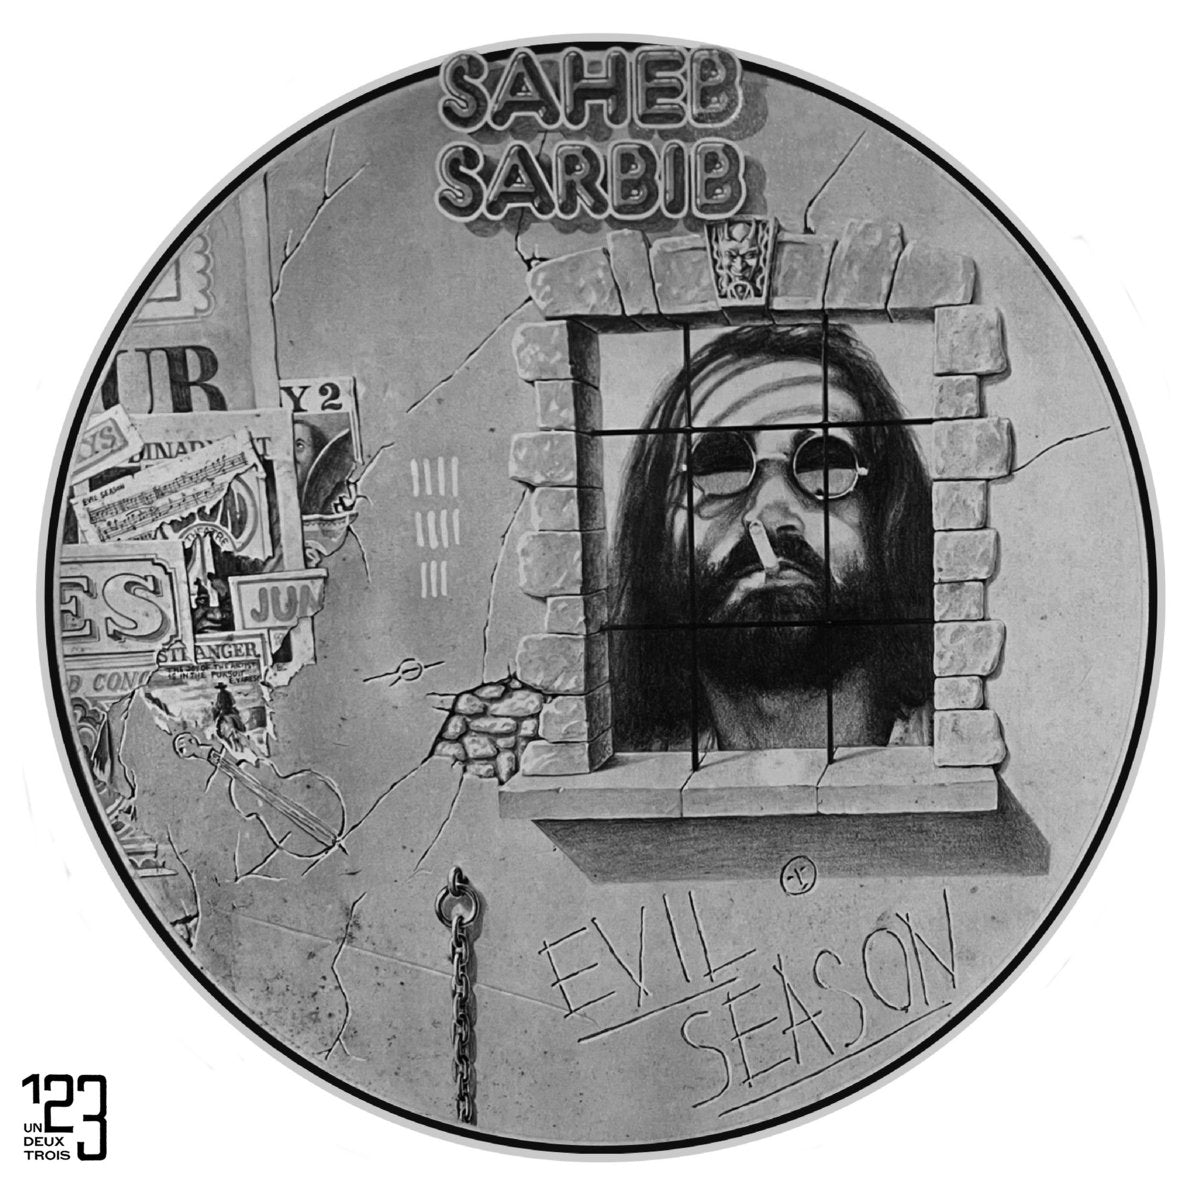 Saheb Sarbib – Evil Season LP